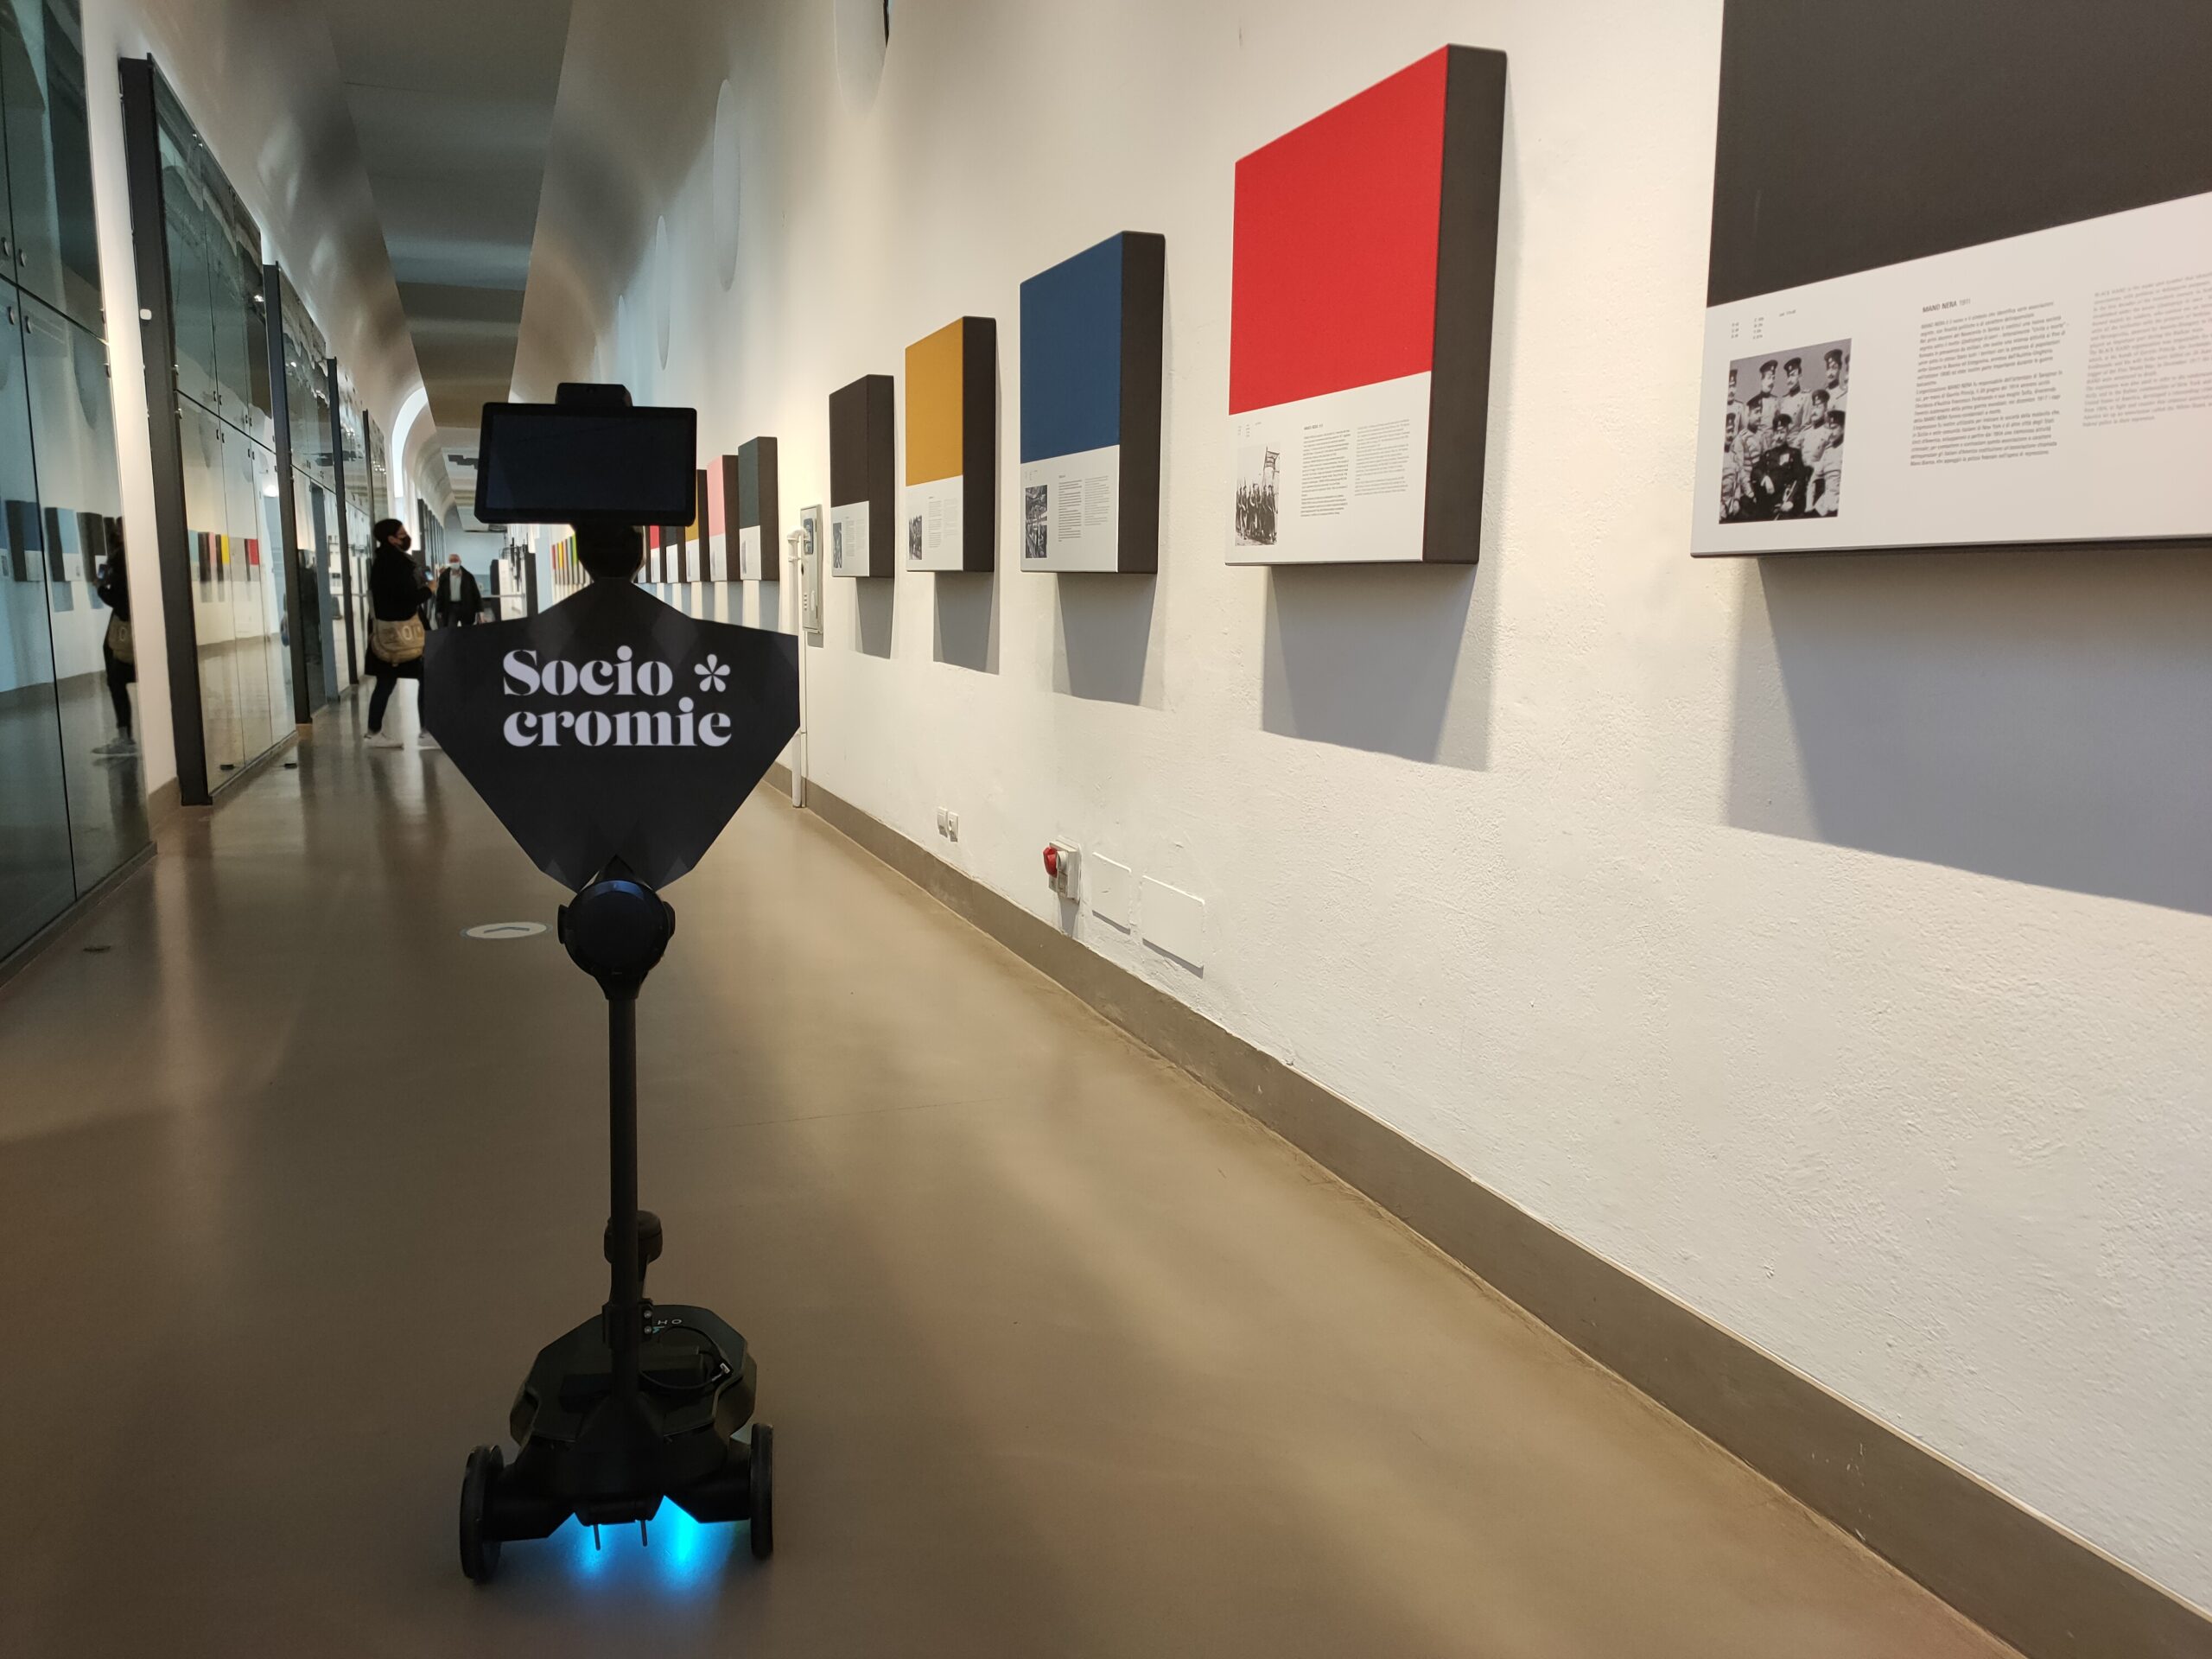 Visite guidate al museo con un robot, ora si può thumbnail